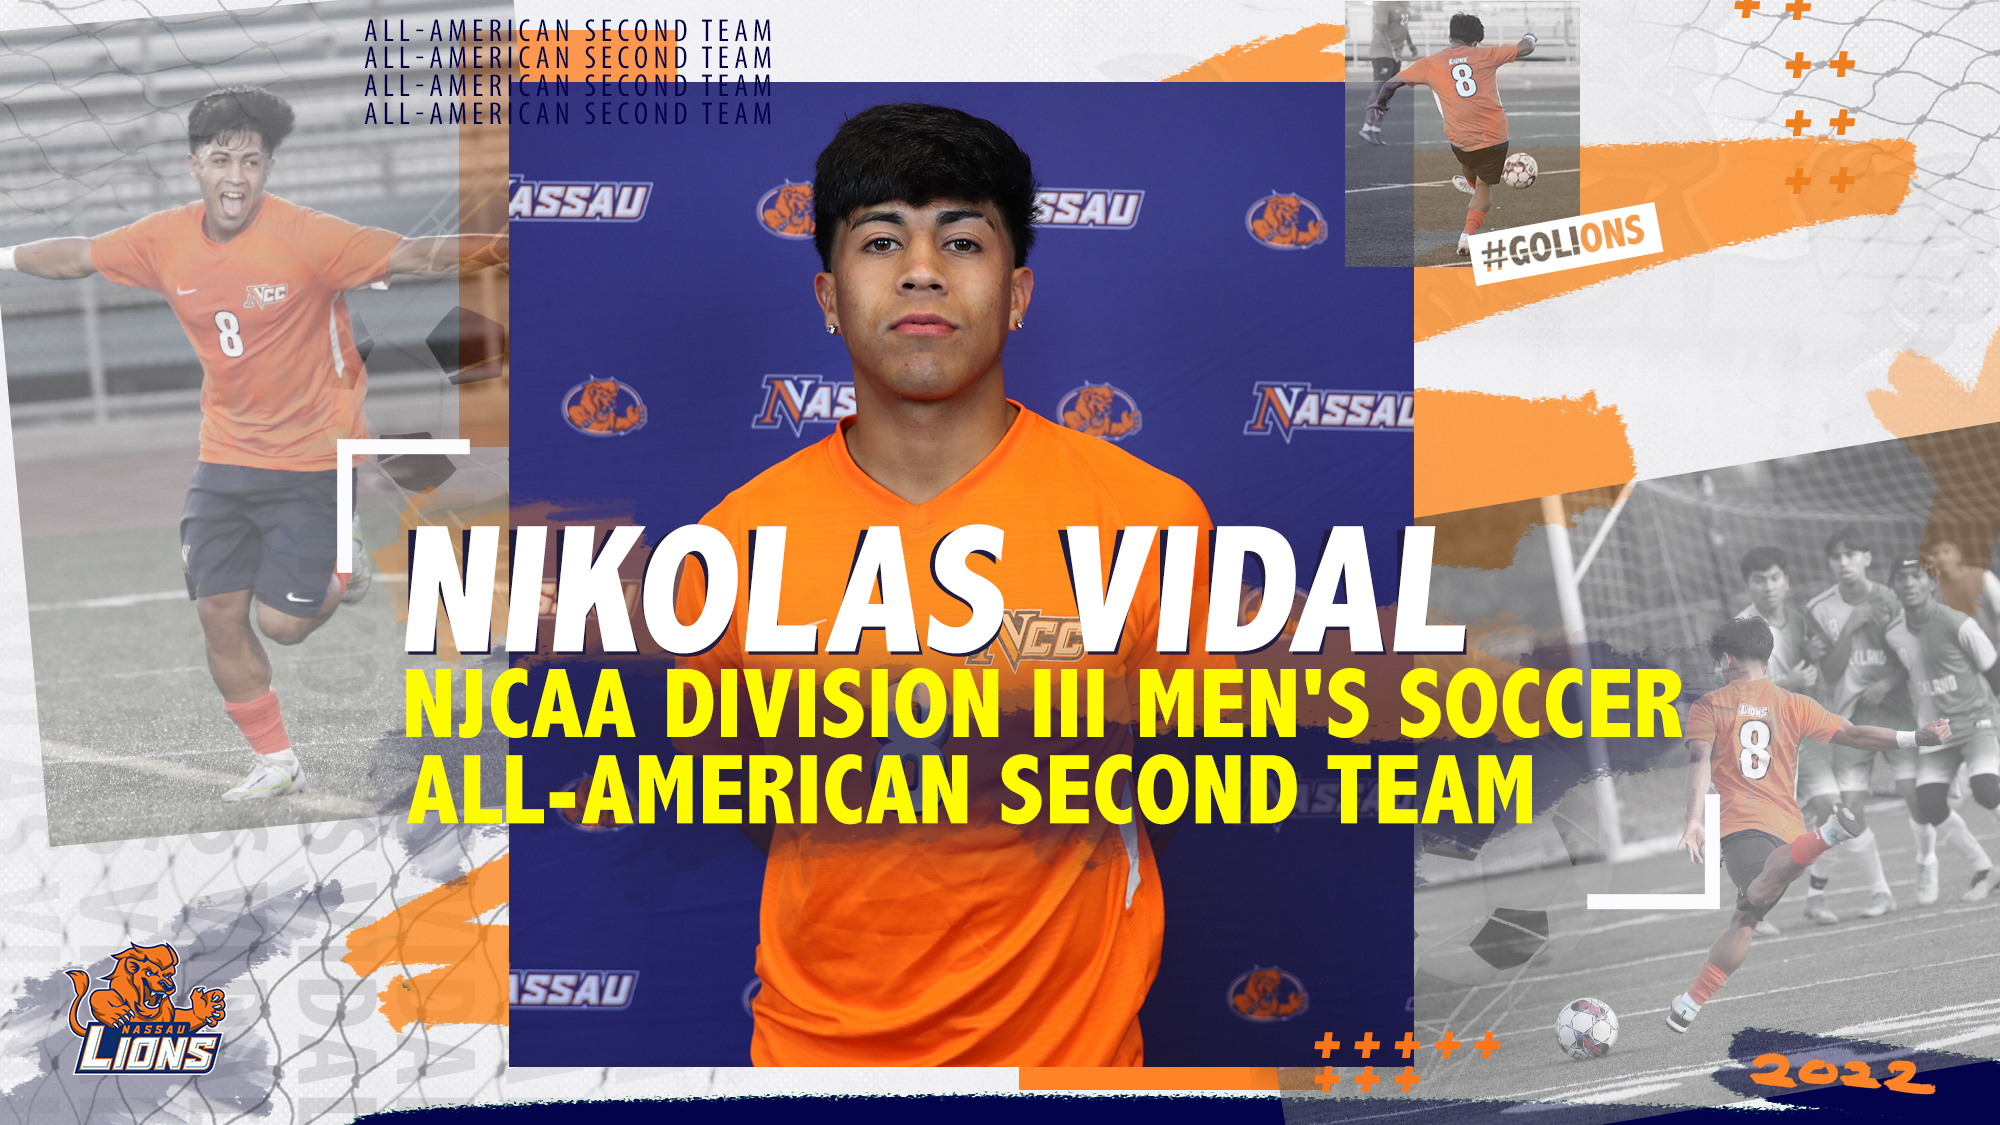 Nikolas Vidal NJCAA Division 3 Men's soccer All-american second team